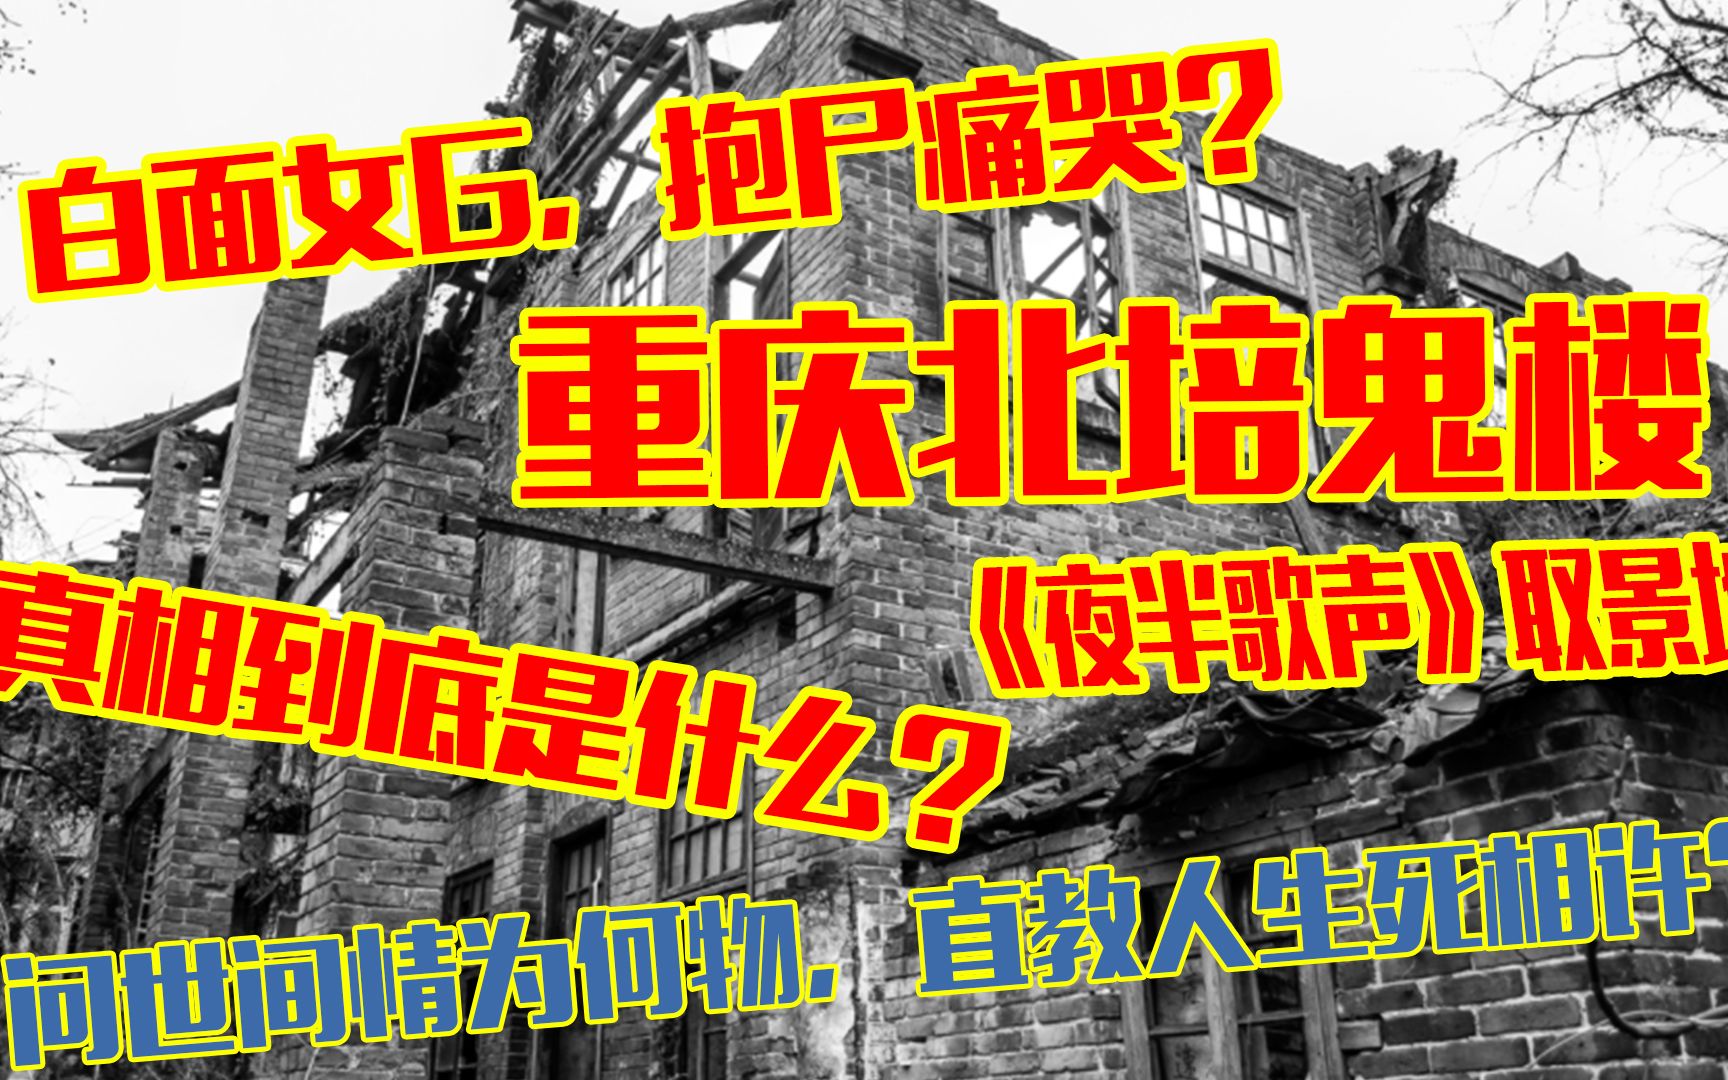 重庆北培鬼楼传说:豪华别墅变成废墟！深夜白面